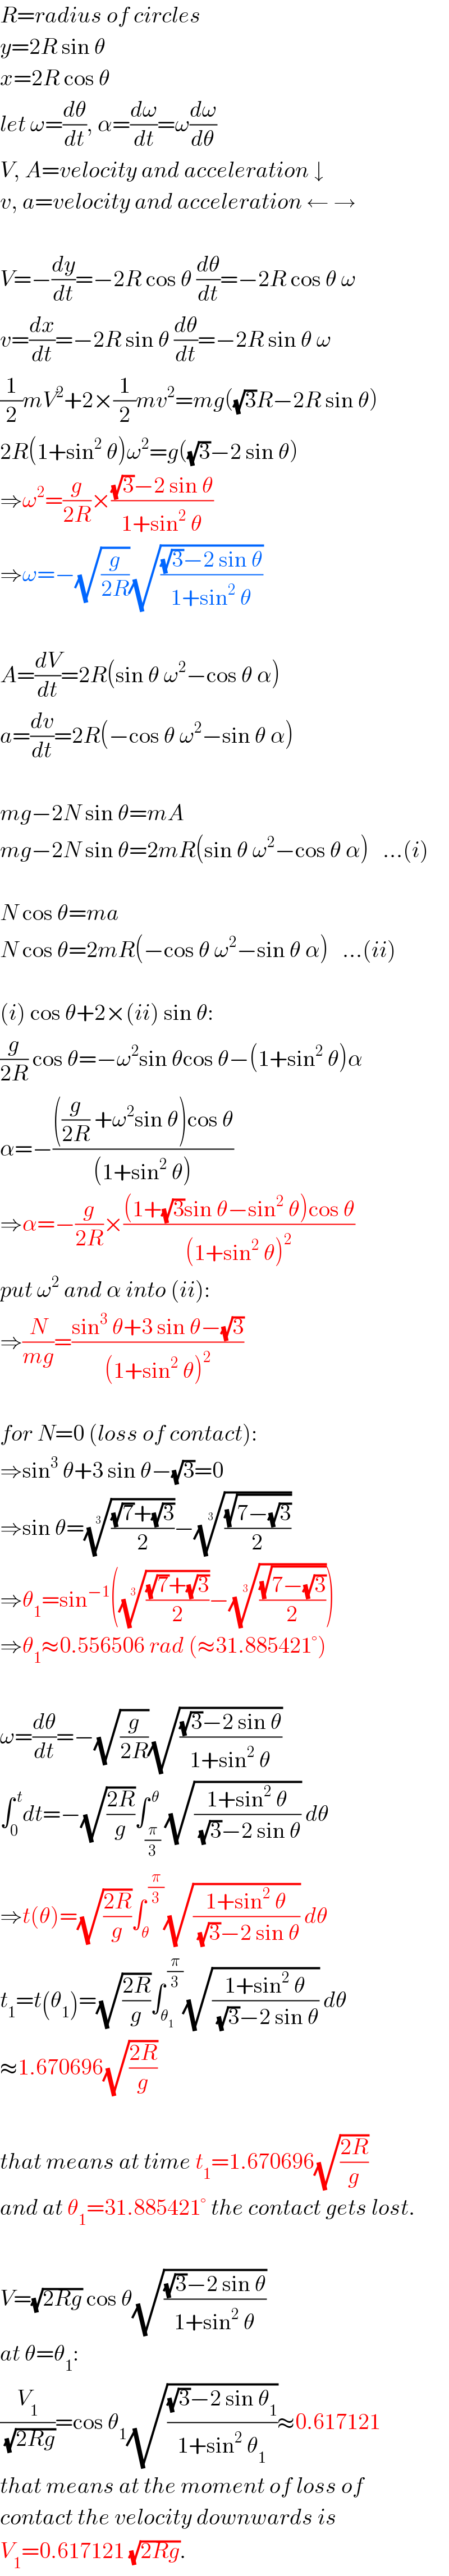 R=radius of circles  y=2R sin θ  x=2R cos θ  let ω=(dθ/dt), α=(dω/dt)=ω(dω/dθ)  V, A=velocity and acceleration ↓  v, a=velocity and acceleration ← →    V=−(dy/dt)=−2R cos θ (dθ/dt)=−2R cos θ ω  v=(dx/dt)=−2R sin θ (dθ/dt)=−2R sin θ ω  (1/2)mV^2 +2×(1/2)mv^2 =mg((√3)R−2R sin θ)  2R(1+sin^2  θ)ω^2 =g((√3)−2 sin θ)  ⇒ω^2 =(g/(2R))×(((√3)−2 sin θ)/(1+sin^2  θ))  ⇒ω=−(√(g/(2R)))(√(((√3)−2 sin θ)/(1+sin^2  θ)))    A=(dV/dt)=2R(sin θ ω^2 −cos θ α)  a=(dv/dt)=2R(−cos θ ω^2 −sin θ α)    mg−2N sin θ=mA  mg−2N sin θ=2mR(sin θ ω^2 −cos θ α)   ...(i)    N cos θ=ma  N cos θ=2mR(−cos θ ω^2 −sin θ α)   ...(ii)    (i) cos θ+2×(ii) sin θ:  (g/(2R)) cos θ=−ω^2 sin θcos θ−(1+sin^2  θ)α  α=−((((g/(2R)) +ω^2 sin θ)cos θ)/((1+sin^2  θ)))  ⇒α=−(g/(2R))×(((1+(√3)sin θ−sin^2  θ)cos θ)/((1+sin^2  θ)^2 ))  put ω^2  and α into (ii):  ⇒(N/(mg))=((sin^3  θ+3 sin θ−(√3))/((1+sin^2  θ)^2 ))    for N=0 (loss of contact):  ⇒sin^3  θ+3 sin θ−(√3)=0  ⇒sin θ=((((√7)+(√3))/2))^(1/3) −(((√(7−(√3)))/2))^(1/3)   ⇒θ_1 =sin^(−1) (((((√7)+(√3))/2))^(1/3) −(((√(7−(√3)))/2))^(1/3) )  ⇒θ_1 ≈0.556506 rad (≈31.885421°)    ω=(dθ/dt)=−(√(g/(2R)))(√(((√3)−2 sin θ)/(1+sin^2  θ)))  ∫_0 ^( t) dt=−(√((2R)/g))∫_(π/3) ^( θ) (√((1+sin^2  θ)/((√3)−2 sin θ))) dθ  ⇒t(θ)=(√((2R)/g))∫_θ ^( (π/3)) (√((1+sin^2  θ)/((√3)−2 sin θ))) dθ  t_1 =t(θ_1 )=(√((2R)/g))∫_θ_1  ^( (π/3)) (√((1+sin^2  θ)/((√3)−2 sin θ))) dθ  ≈1.670696(√((2R)/g))    that means at time t_1 =1.670696(√((2R)/g))  and at θ_1 =31.885421° the contact gets lost.    V=(√(2Rg)) cos θ(√(((√3)−2 sin θ)/(1+sin^2  θ)))  at θ=θ_1 :  (V_1 /(√(2Rg)))=cos θ_1 (√(((√3)−2 sin θ_1 )/(1+sin^2  θ_1 )))≈0.617121  that means at the moment of loss of  contact the velocity downwards is  V_1 =0.617121 (√(2Rg)).  